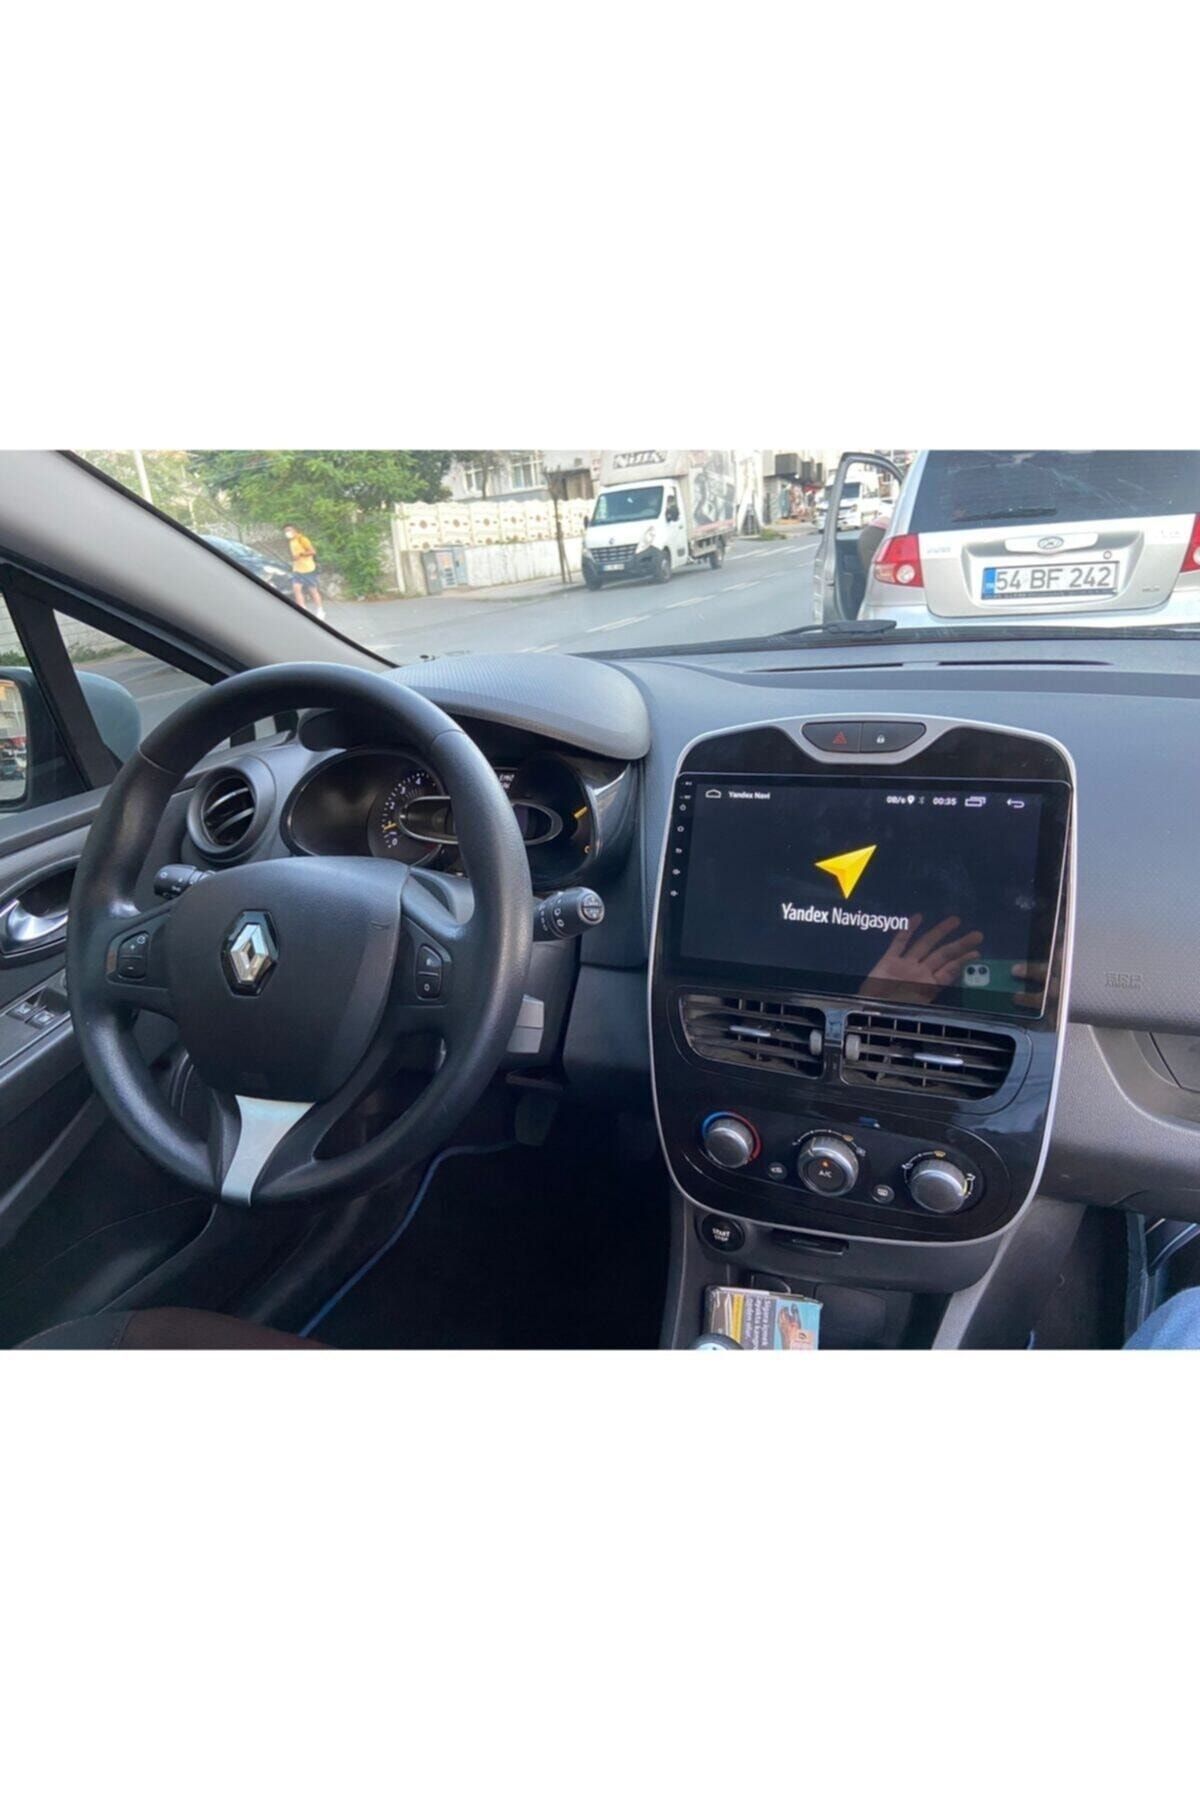 Renault Clio 4 Interior 